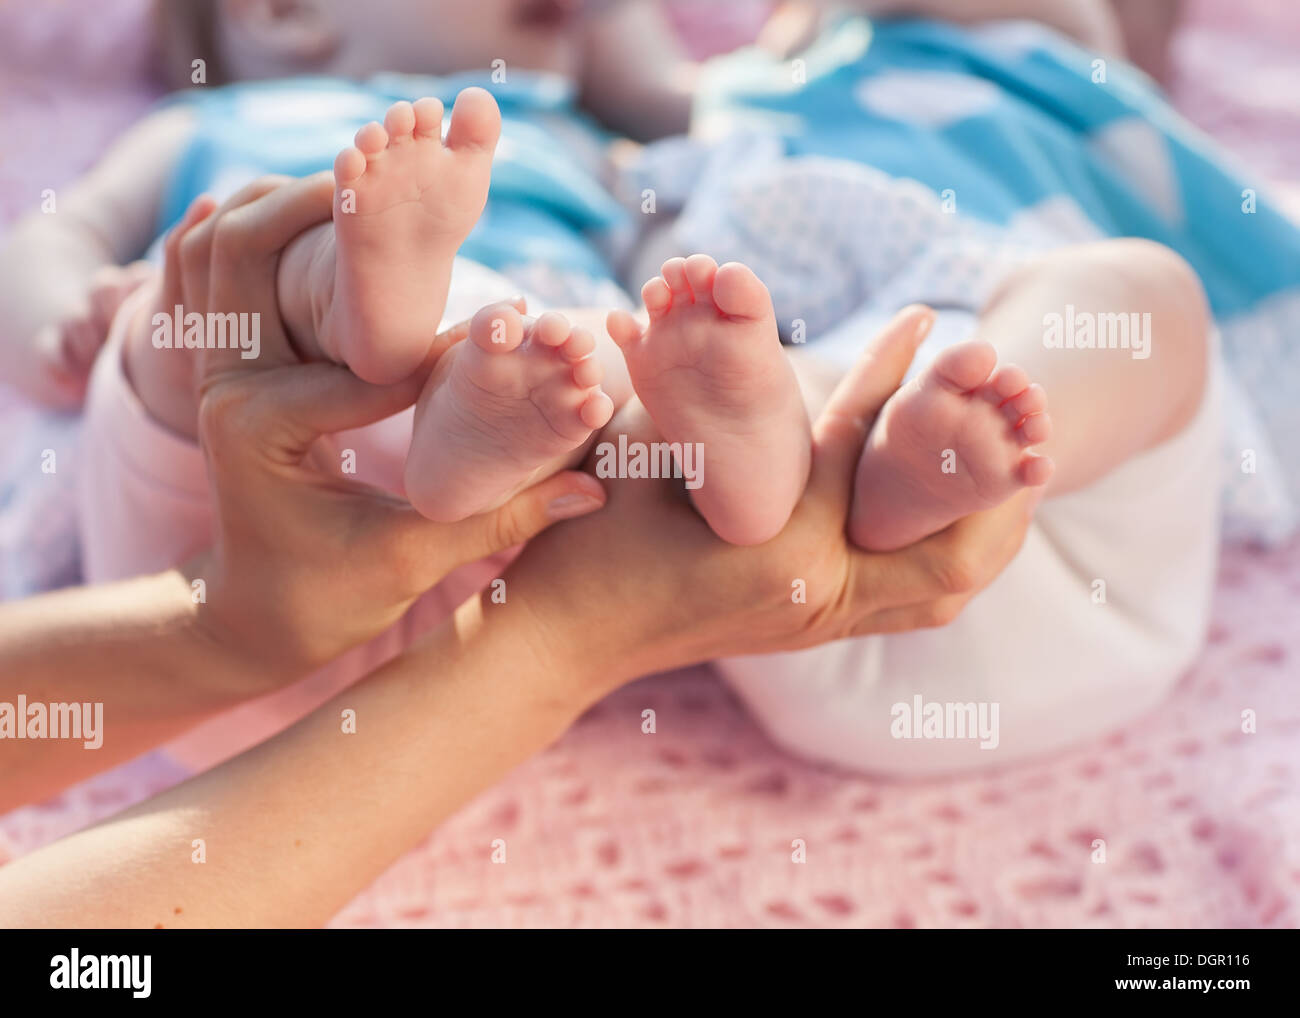 Beine Neugeborene in der Hand der Eltern. Zwillinge auf eine rosa Decke liegen. Stockfoto